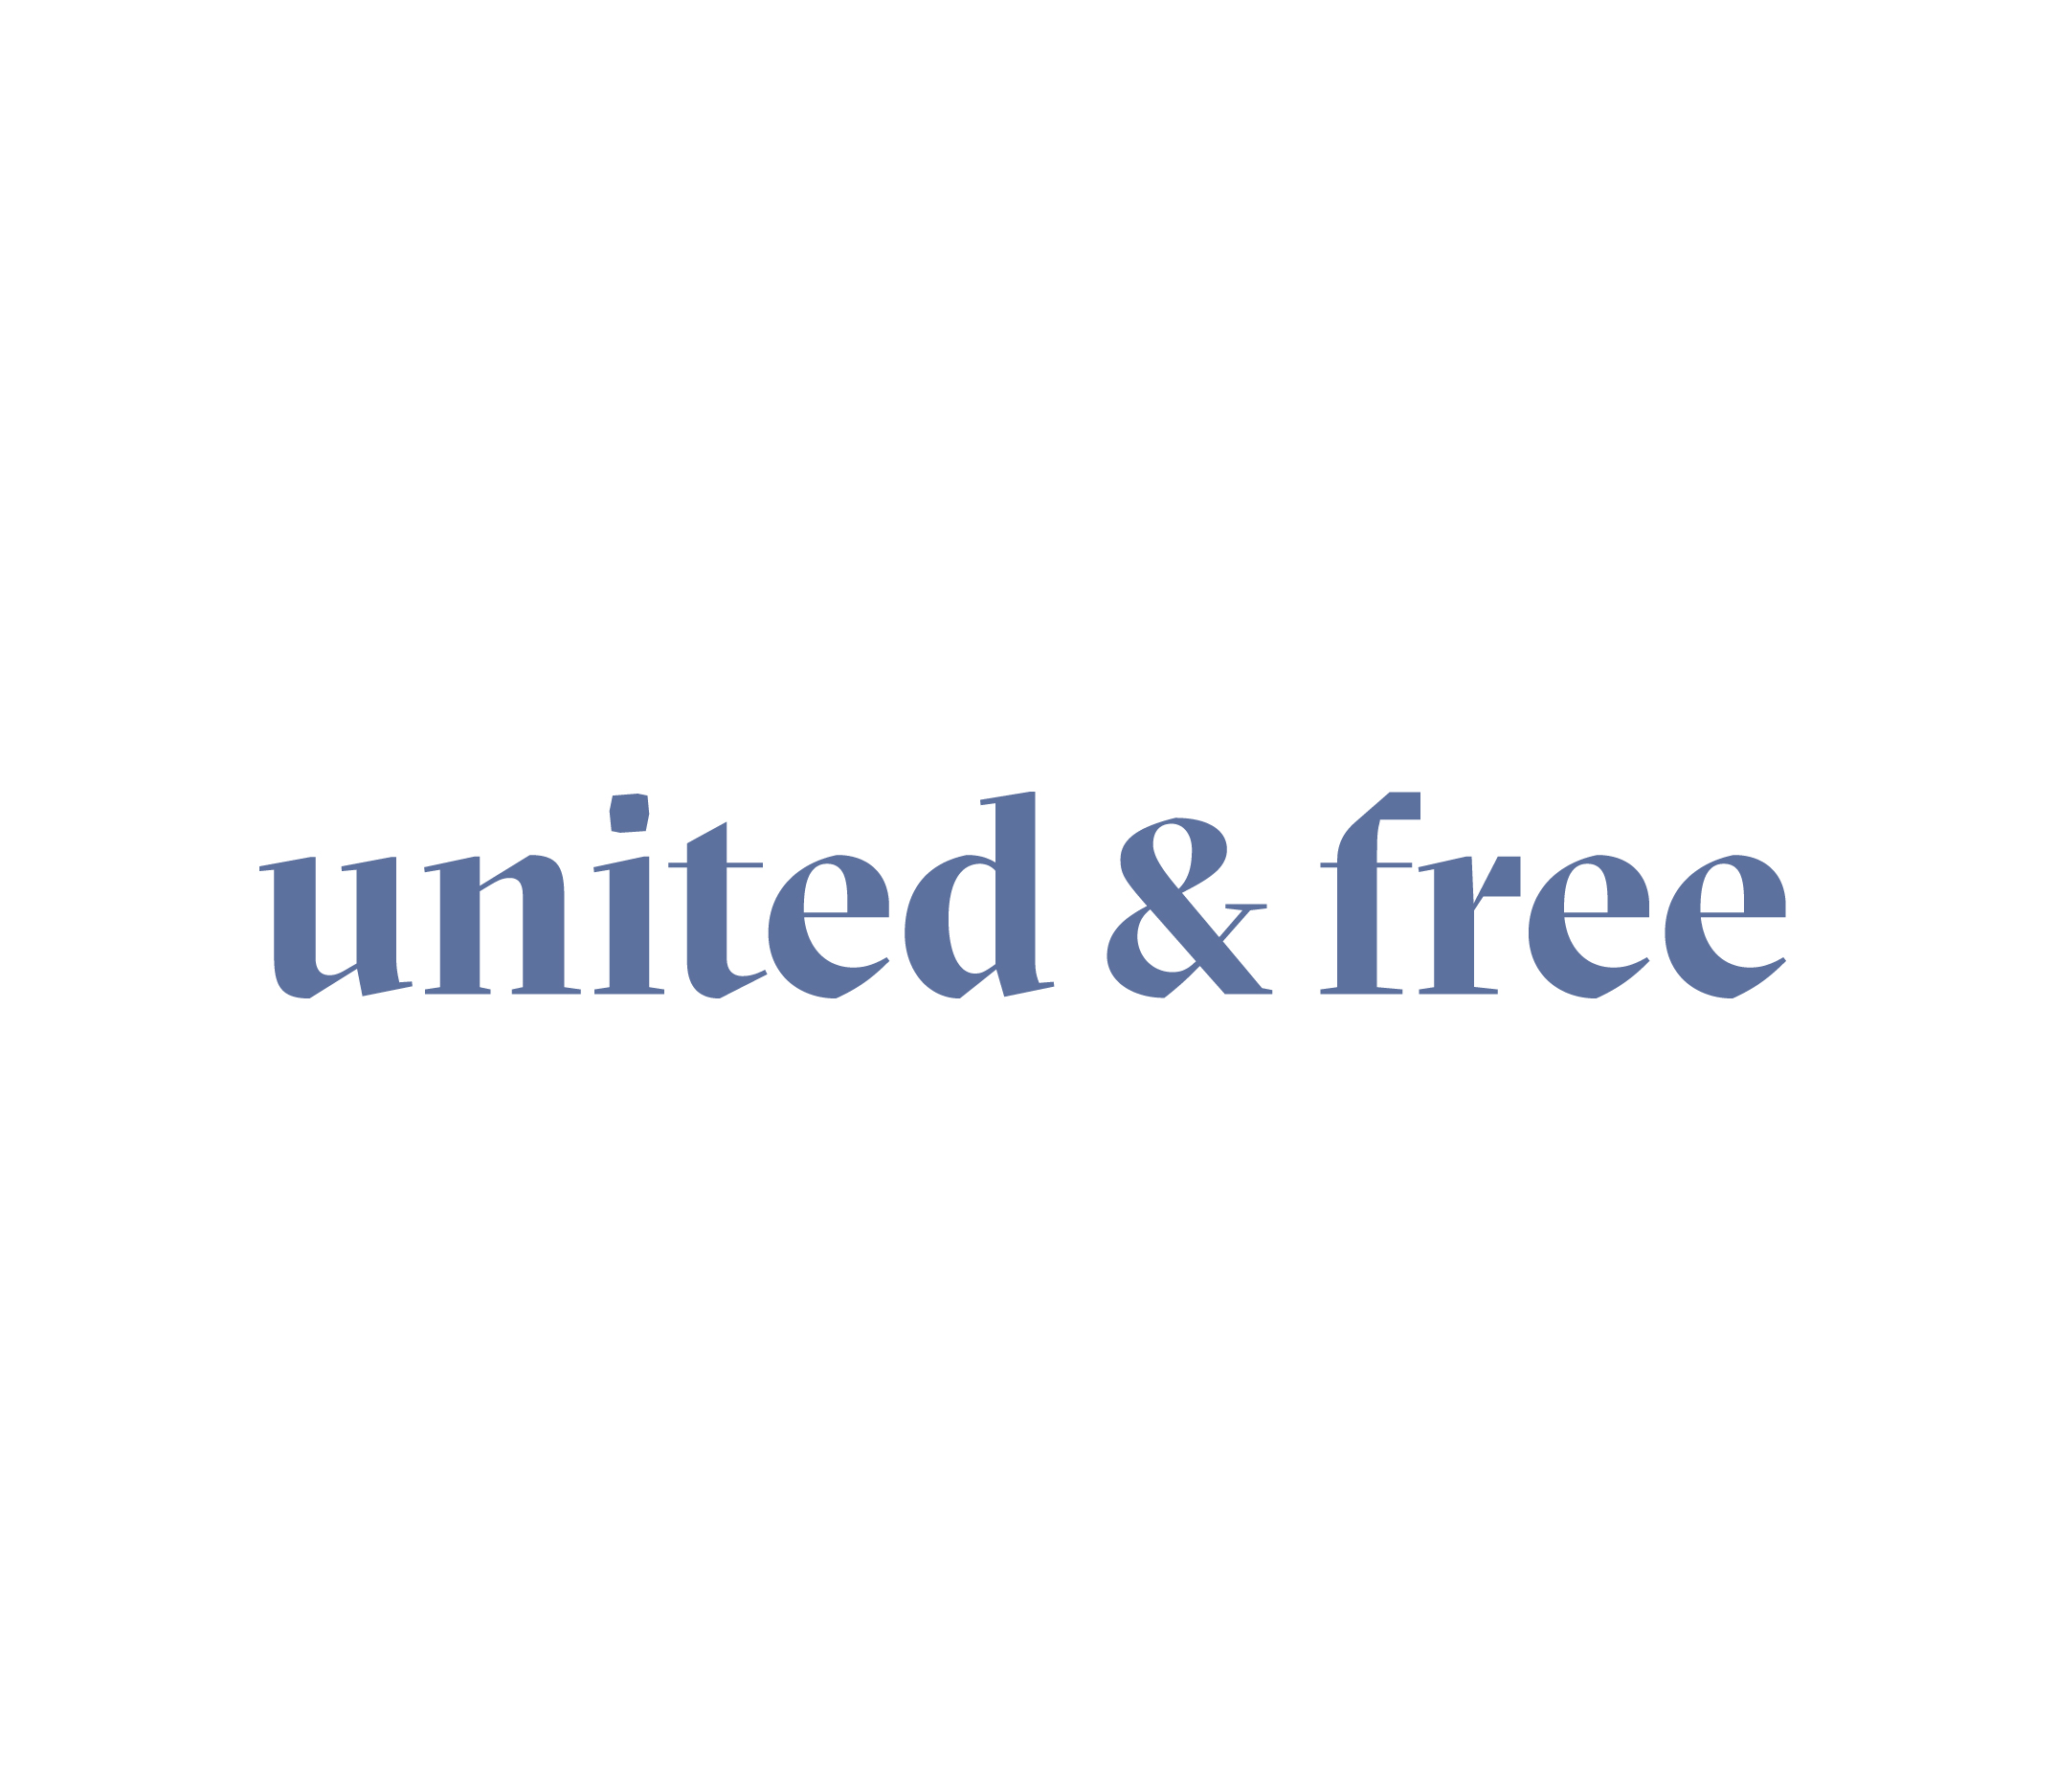 United & Free logo design, branding for gender-neutral skincare brand.